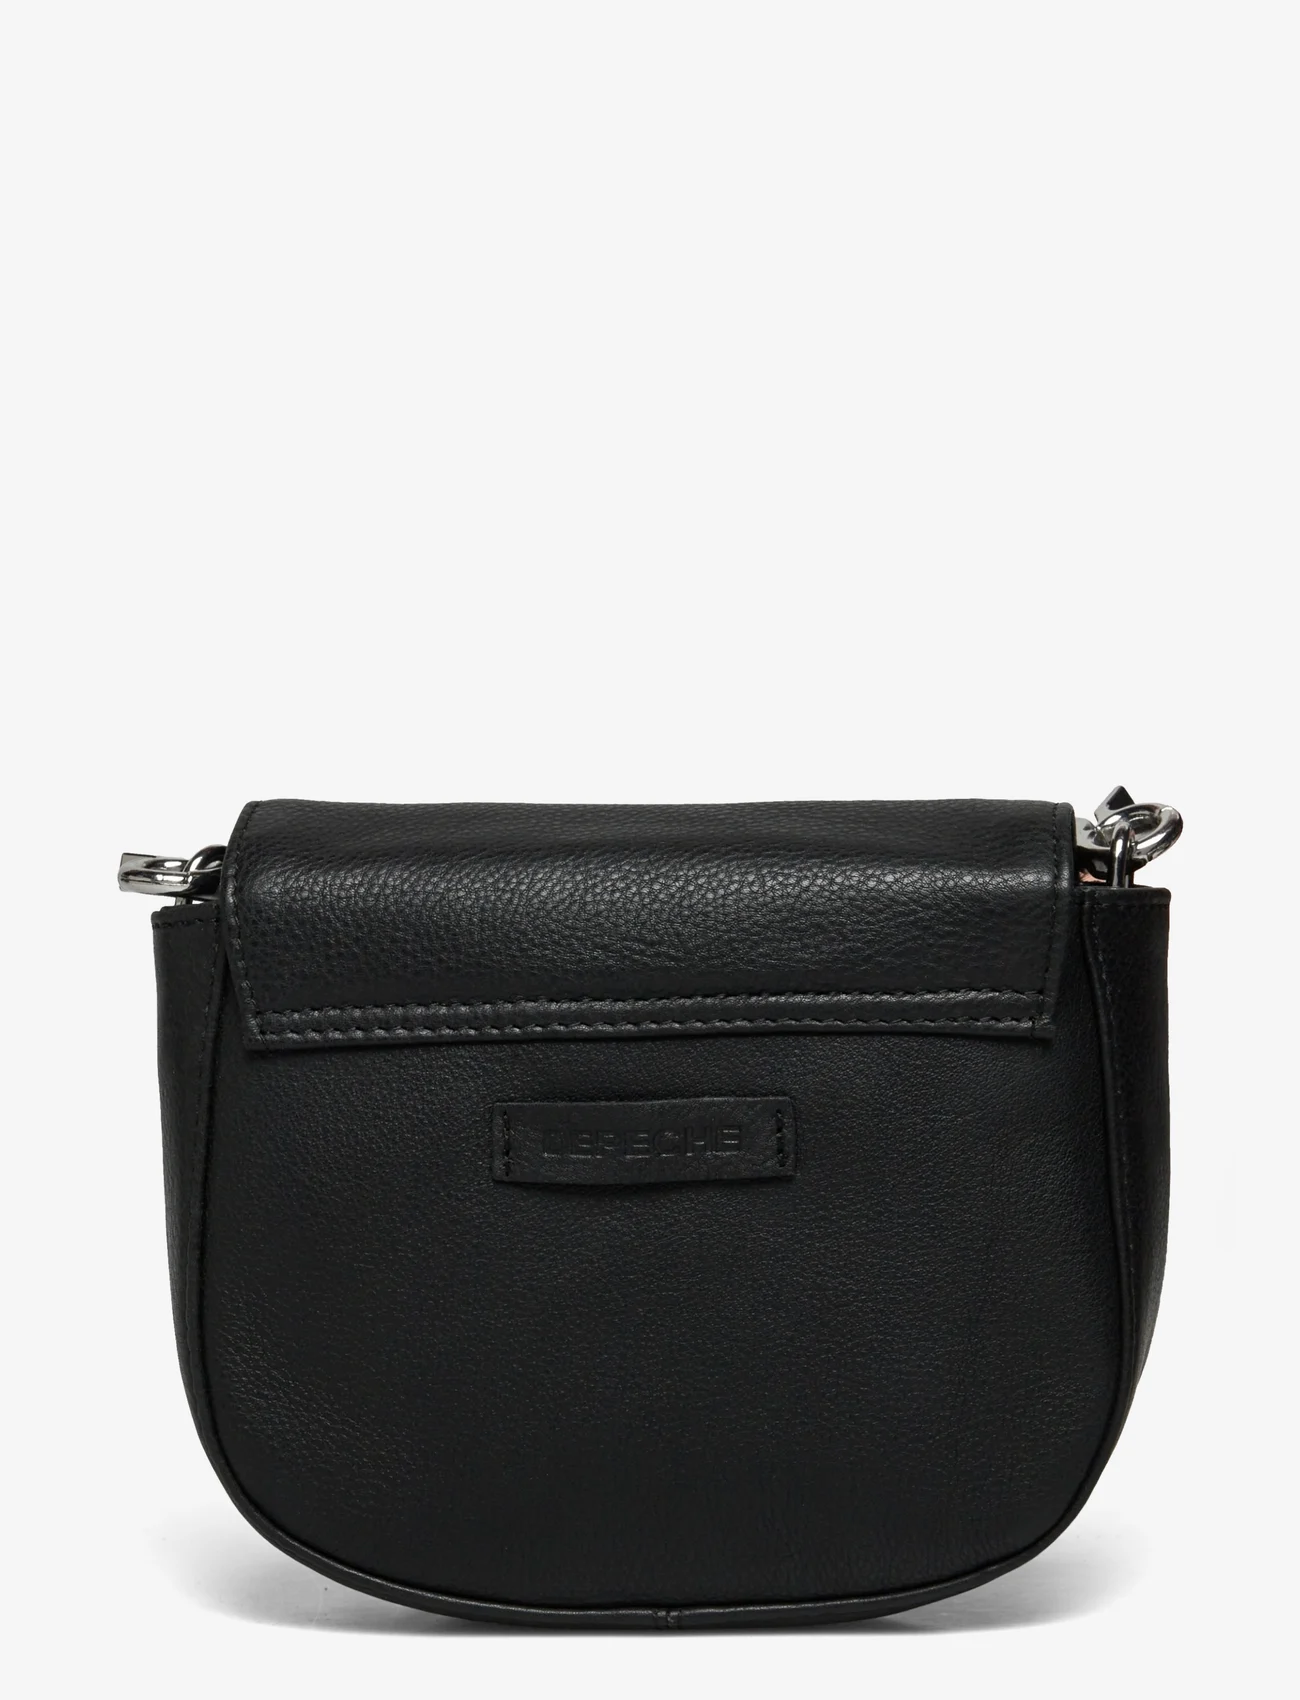 DEPECHE - Small bag / Clutch - feestelijke kleding voor outlet-prijzen - 099 black (nero) - 1